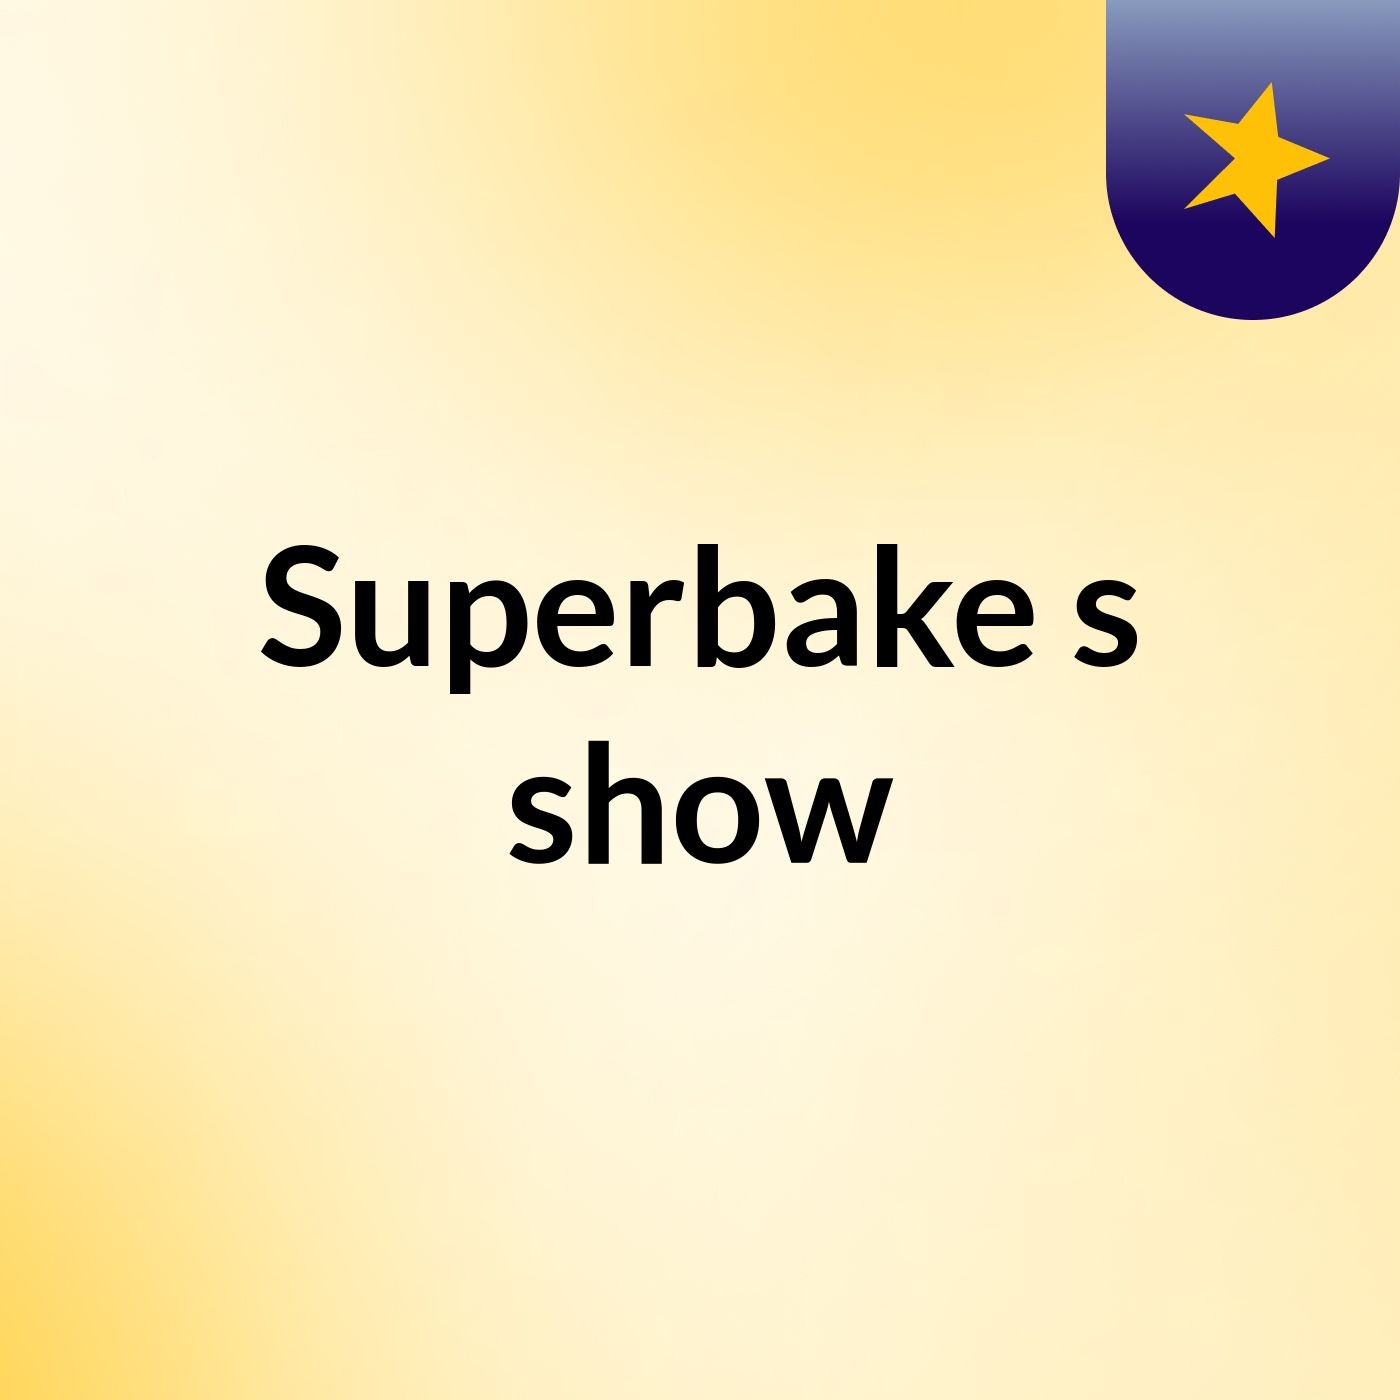 Superbake's show